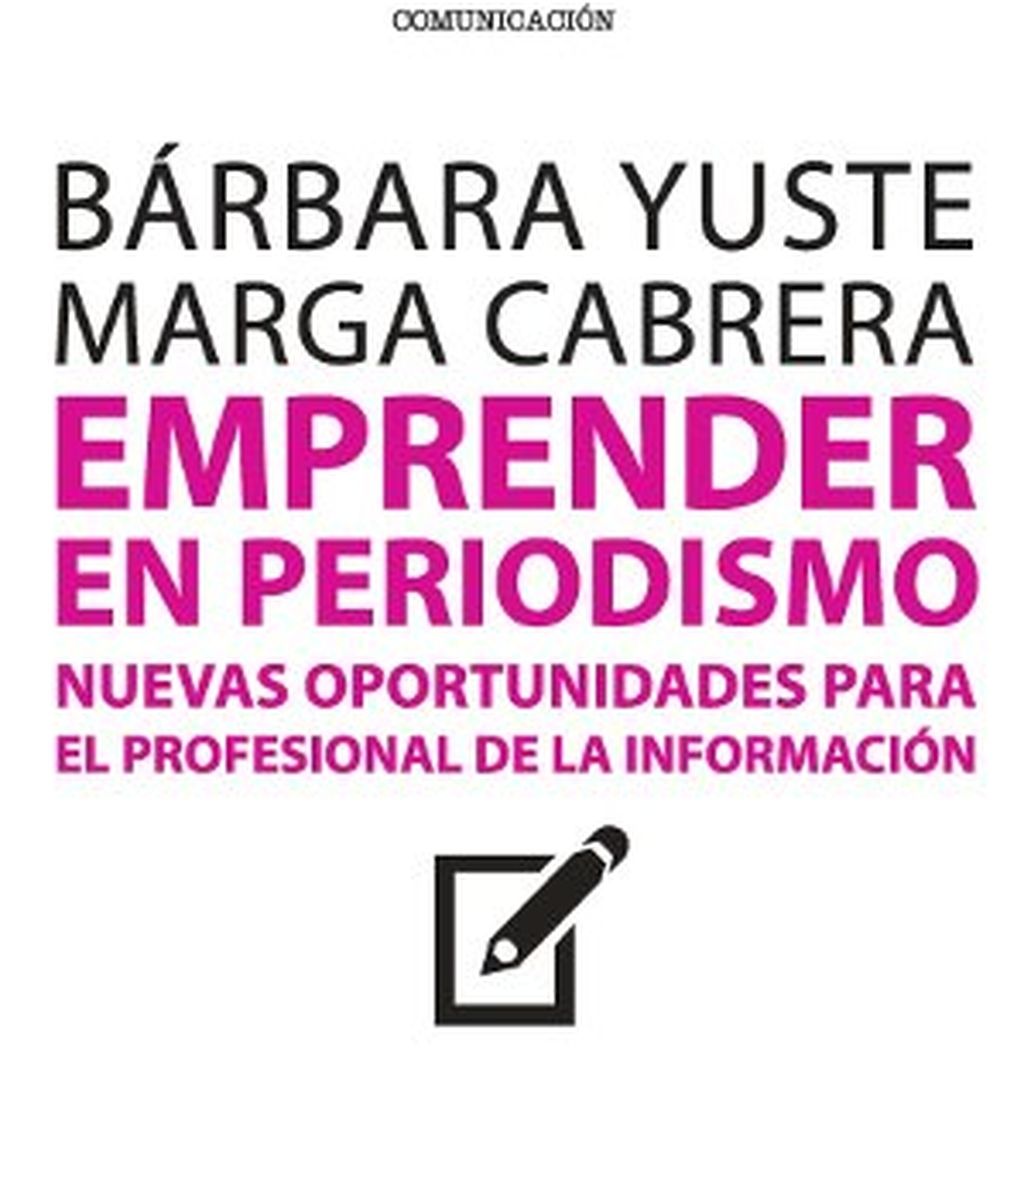 Bárbara Yuste, Emprender en Periodismo, libros, internet, periodismo digital, Marga Cabrera